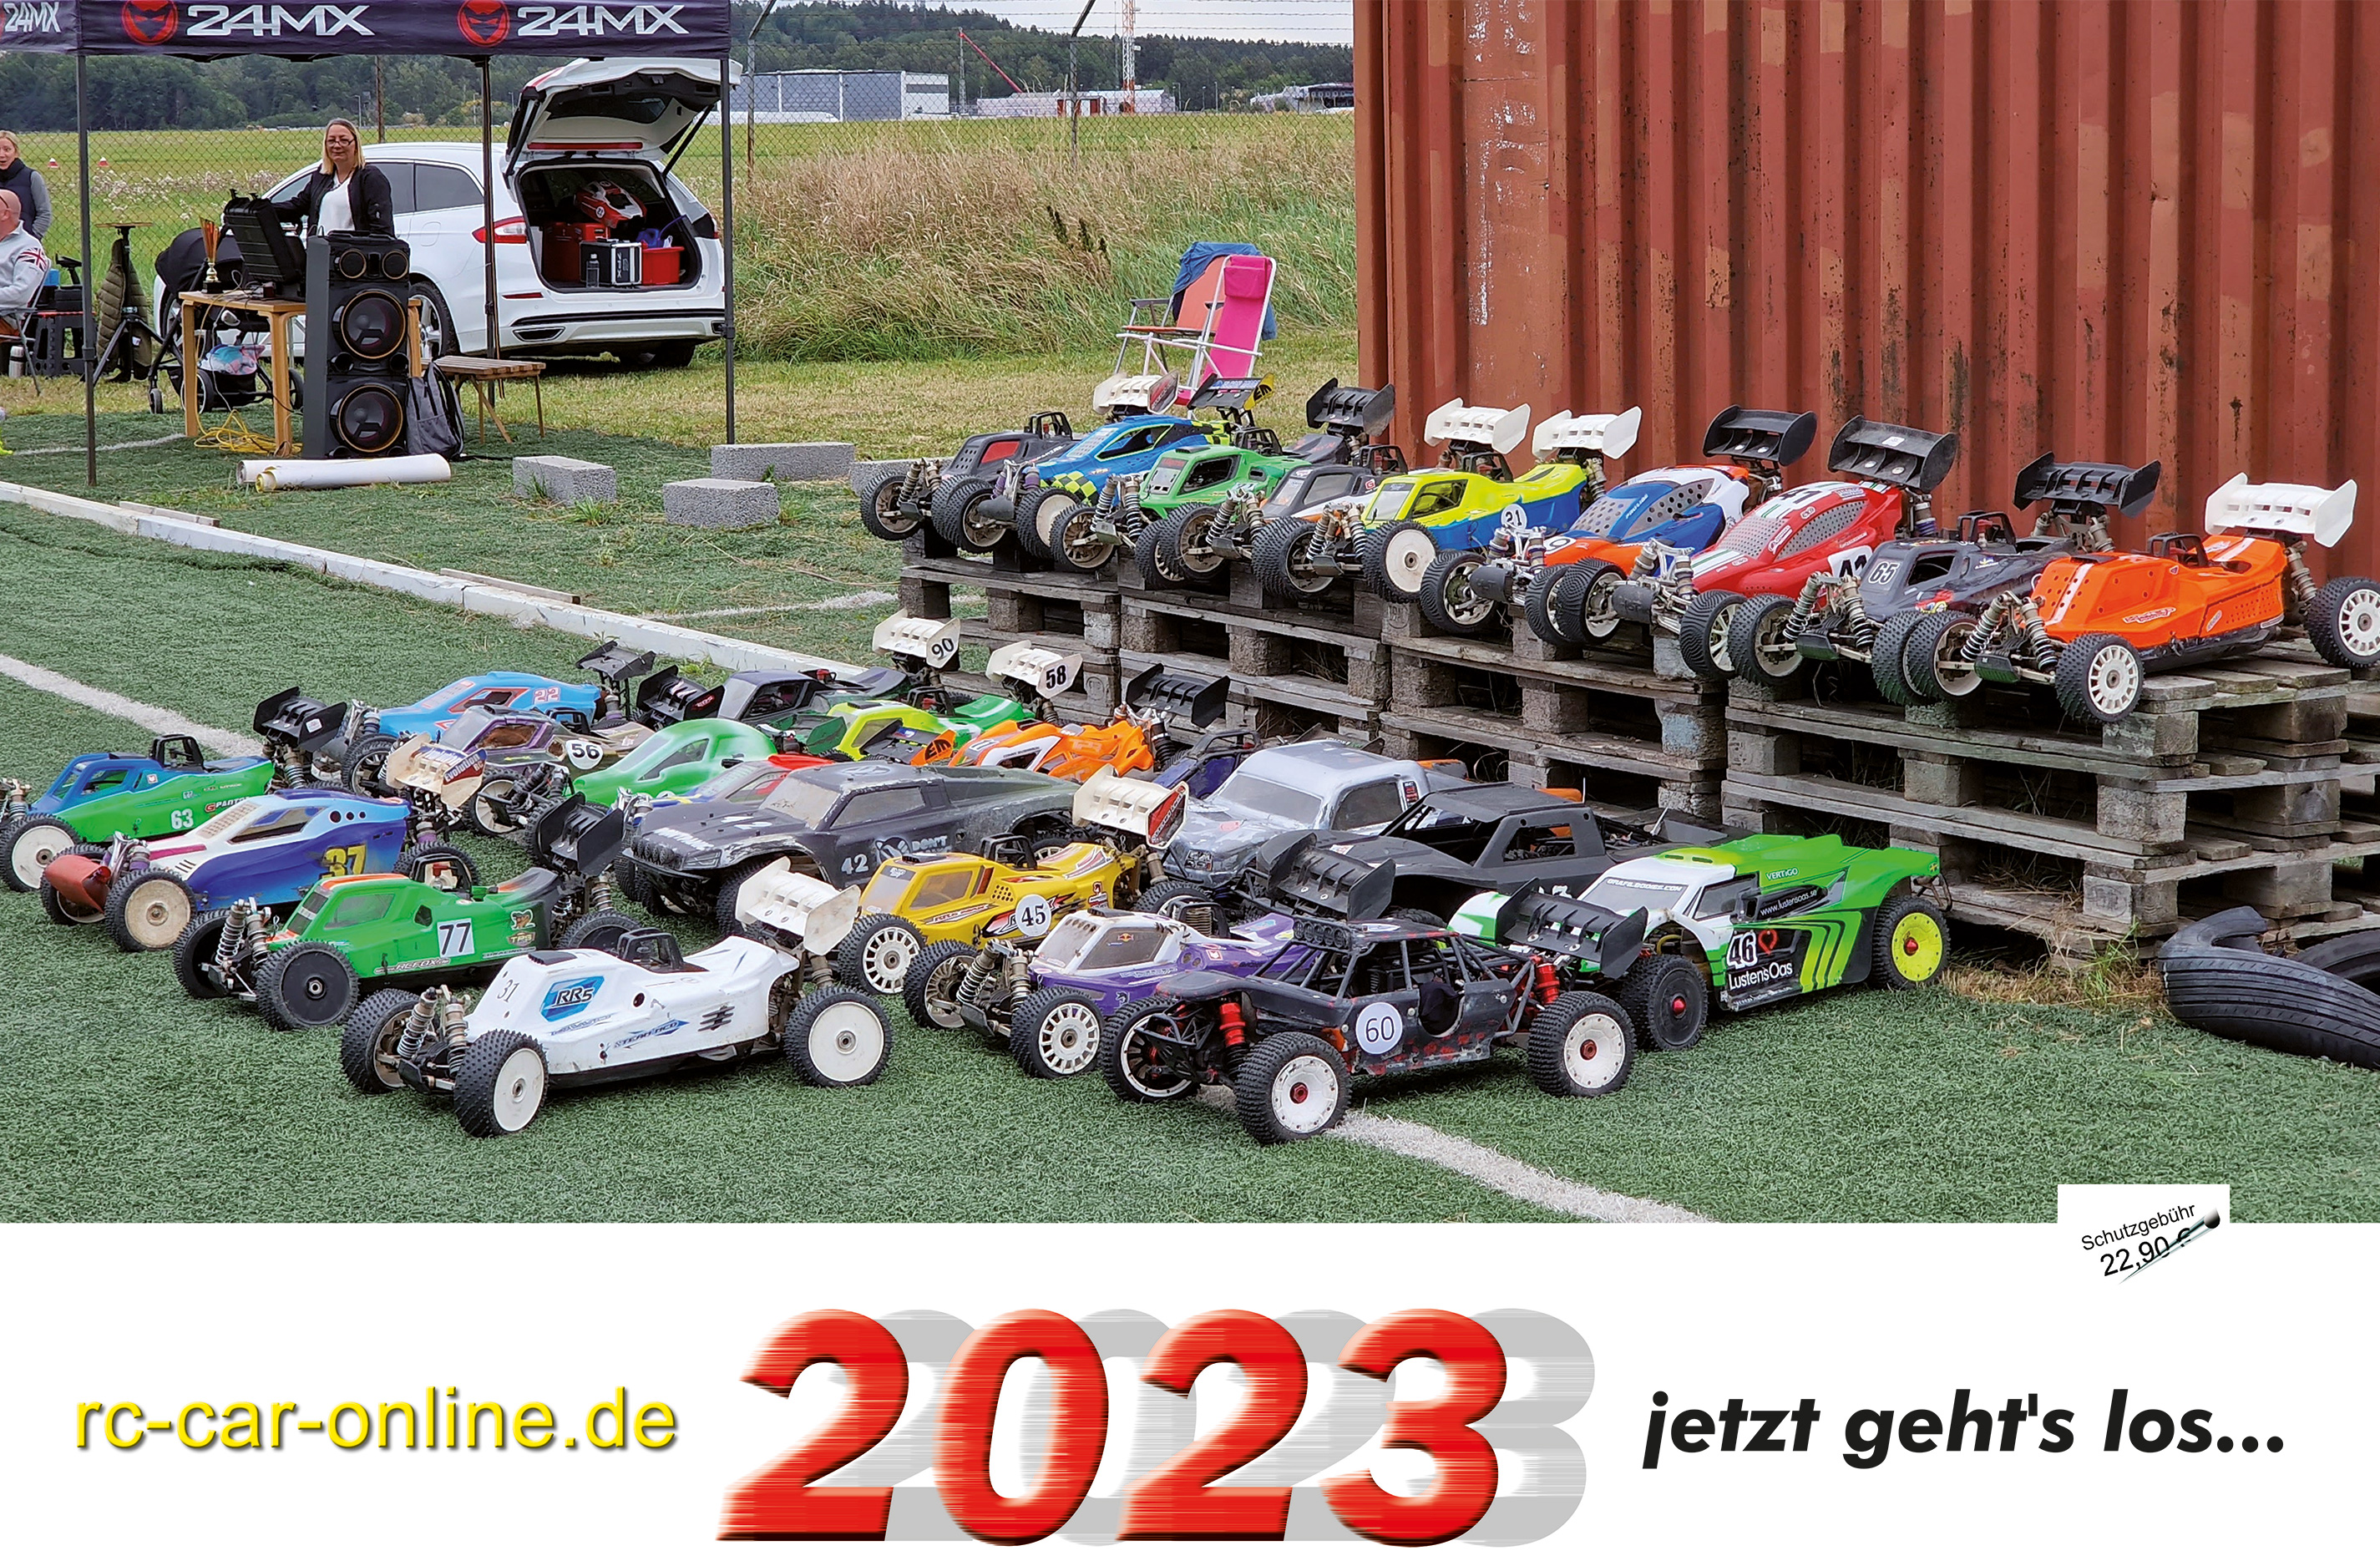 y3100 rc-car-online.de - Calendar 2023